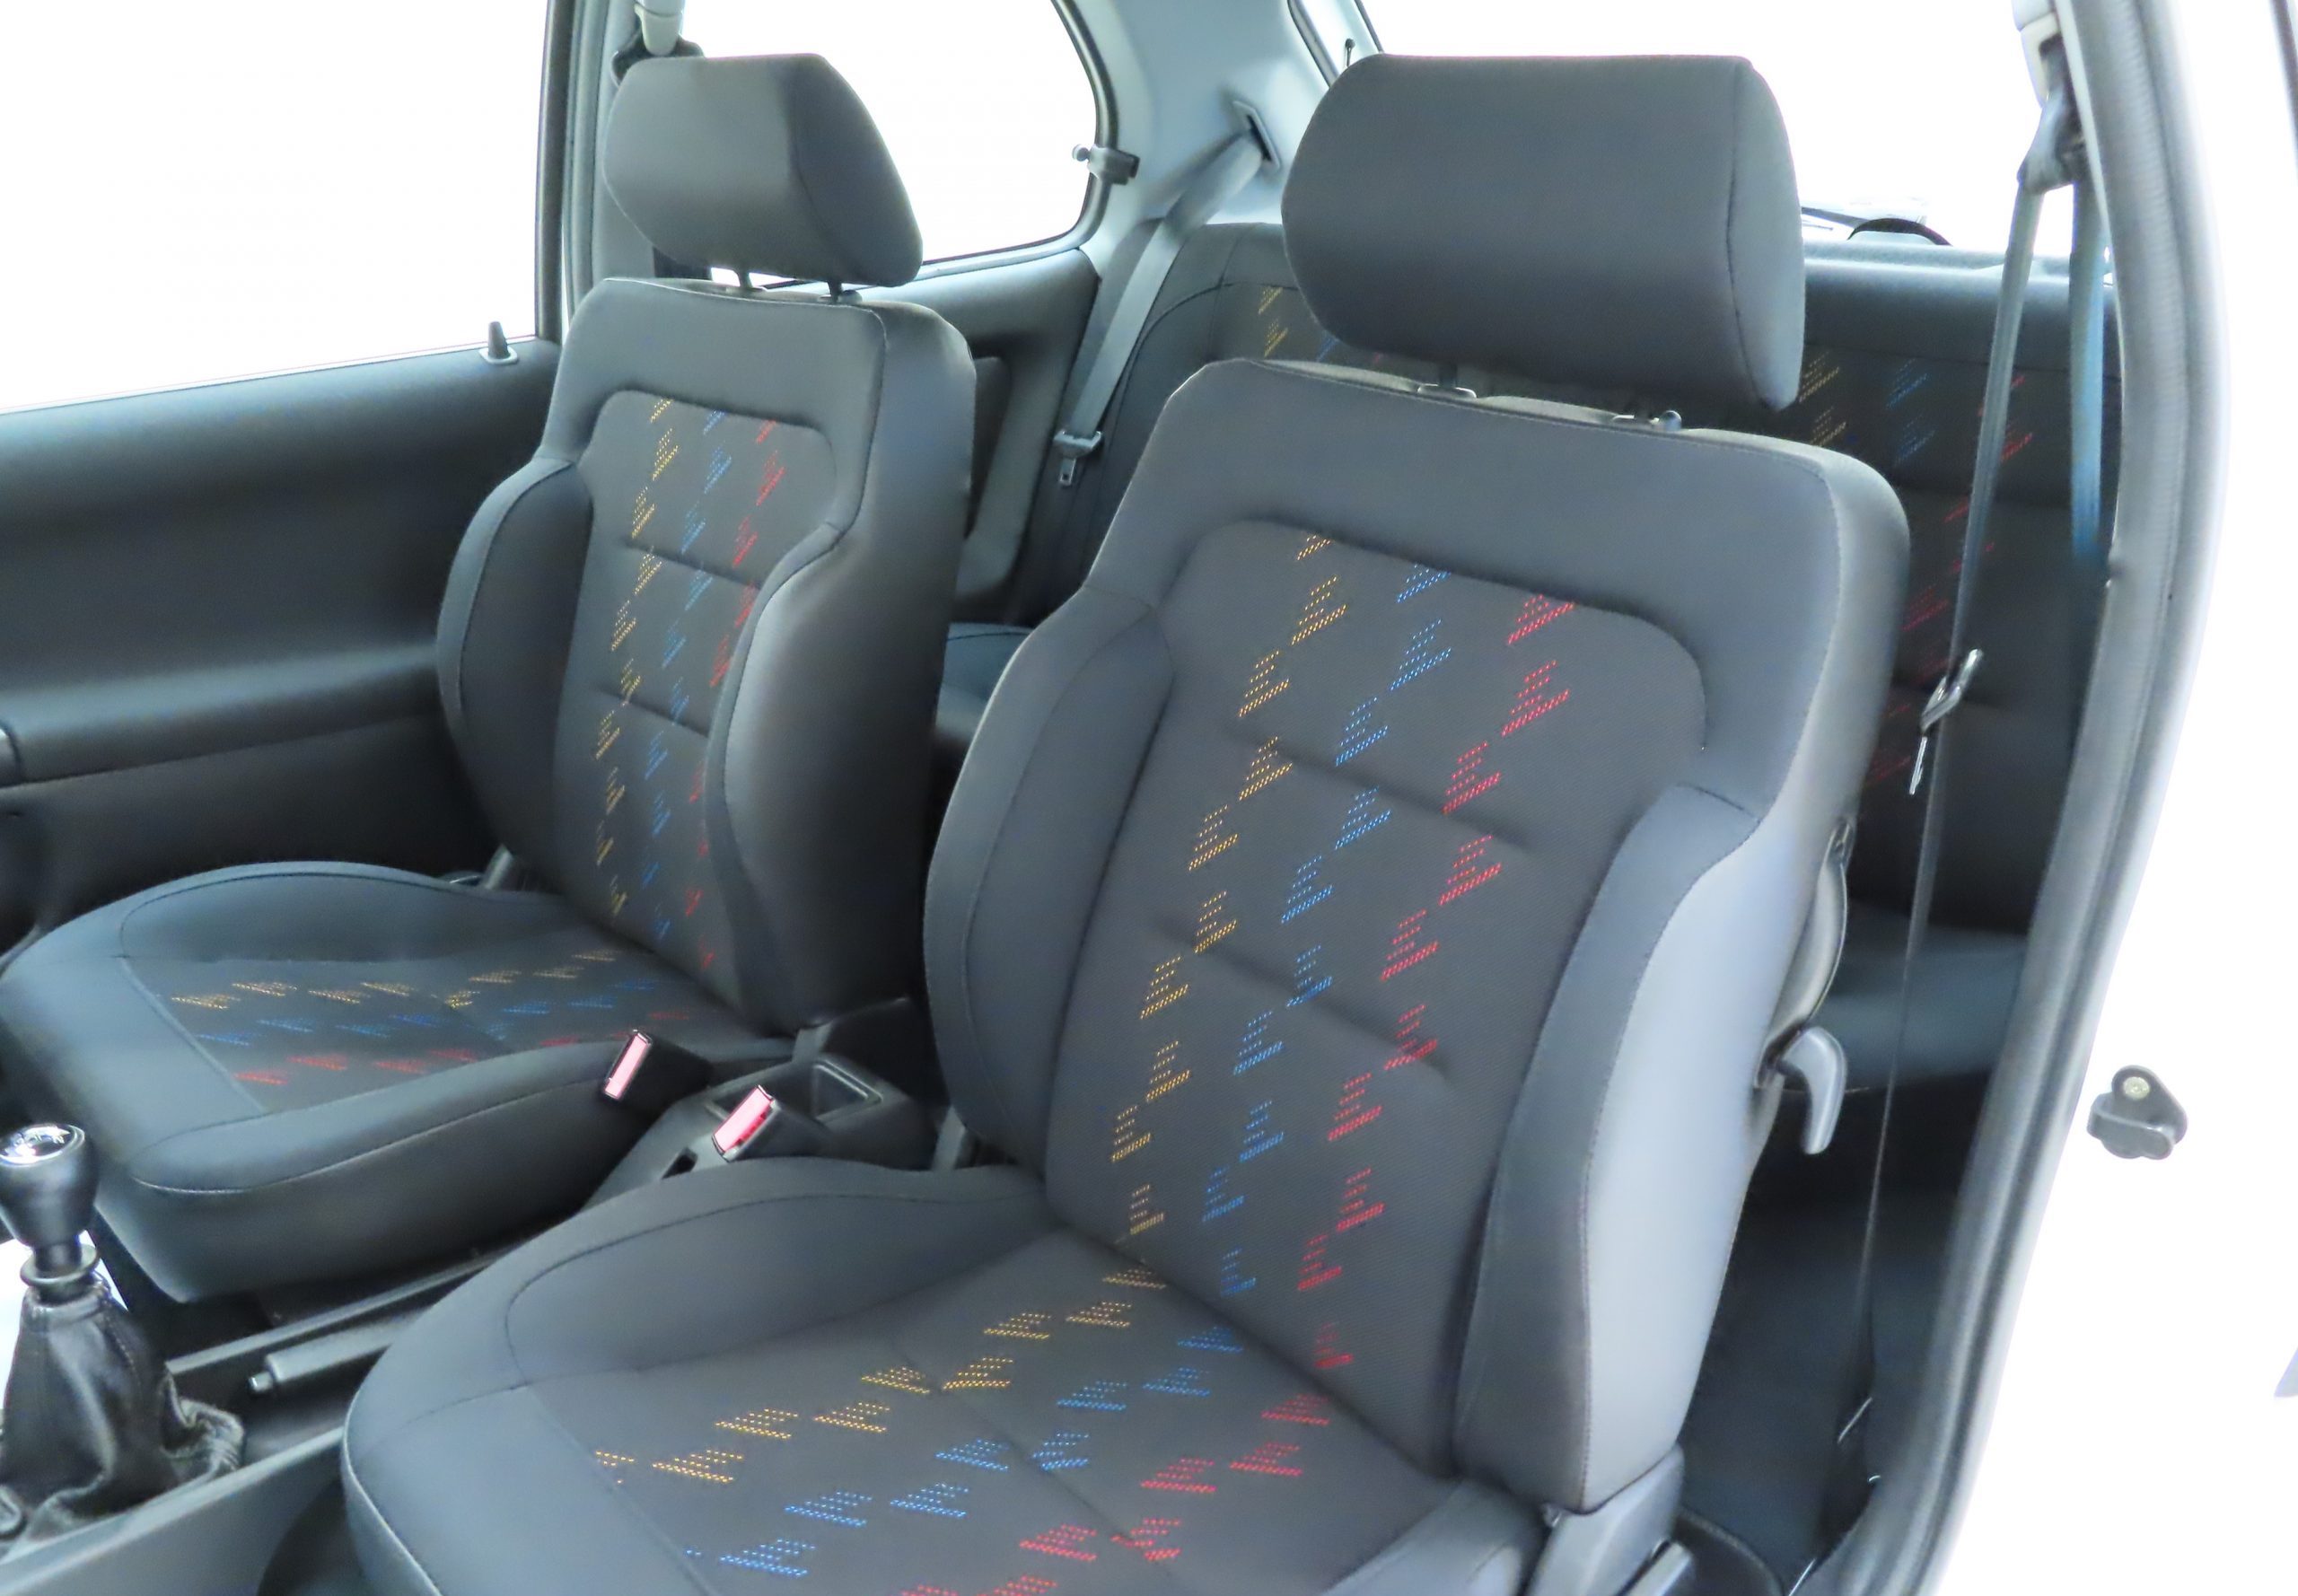 Peugeot 306 Rallye seats